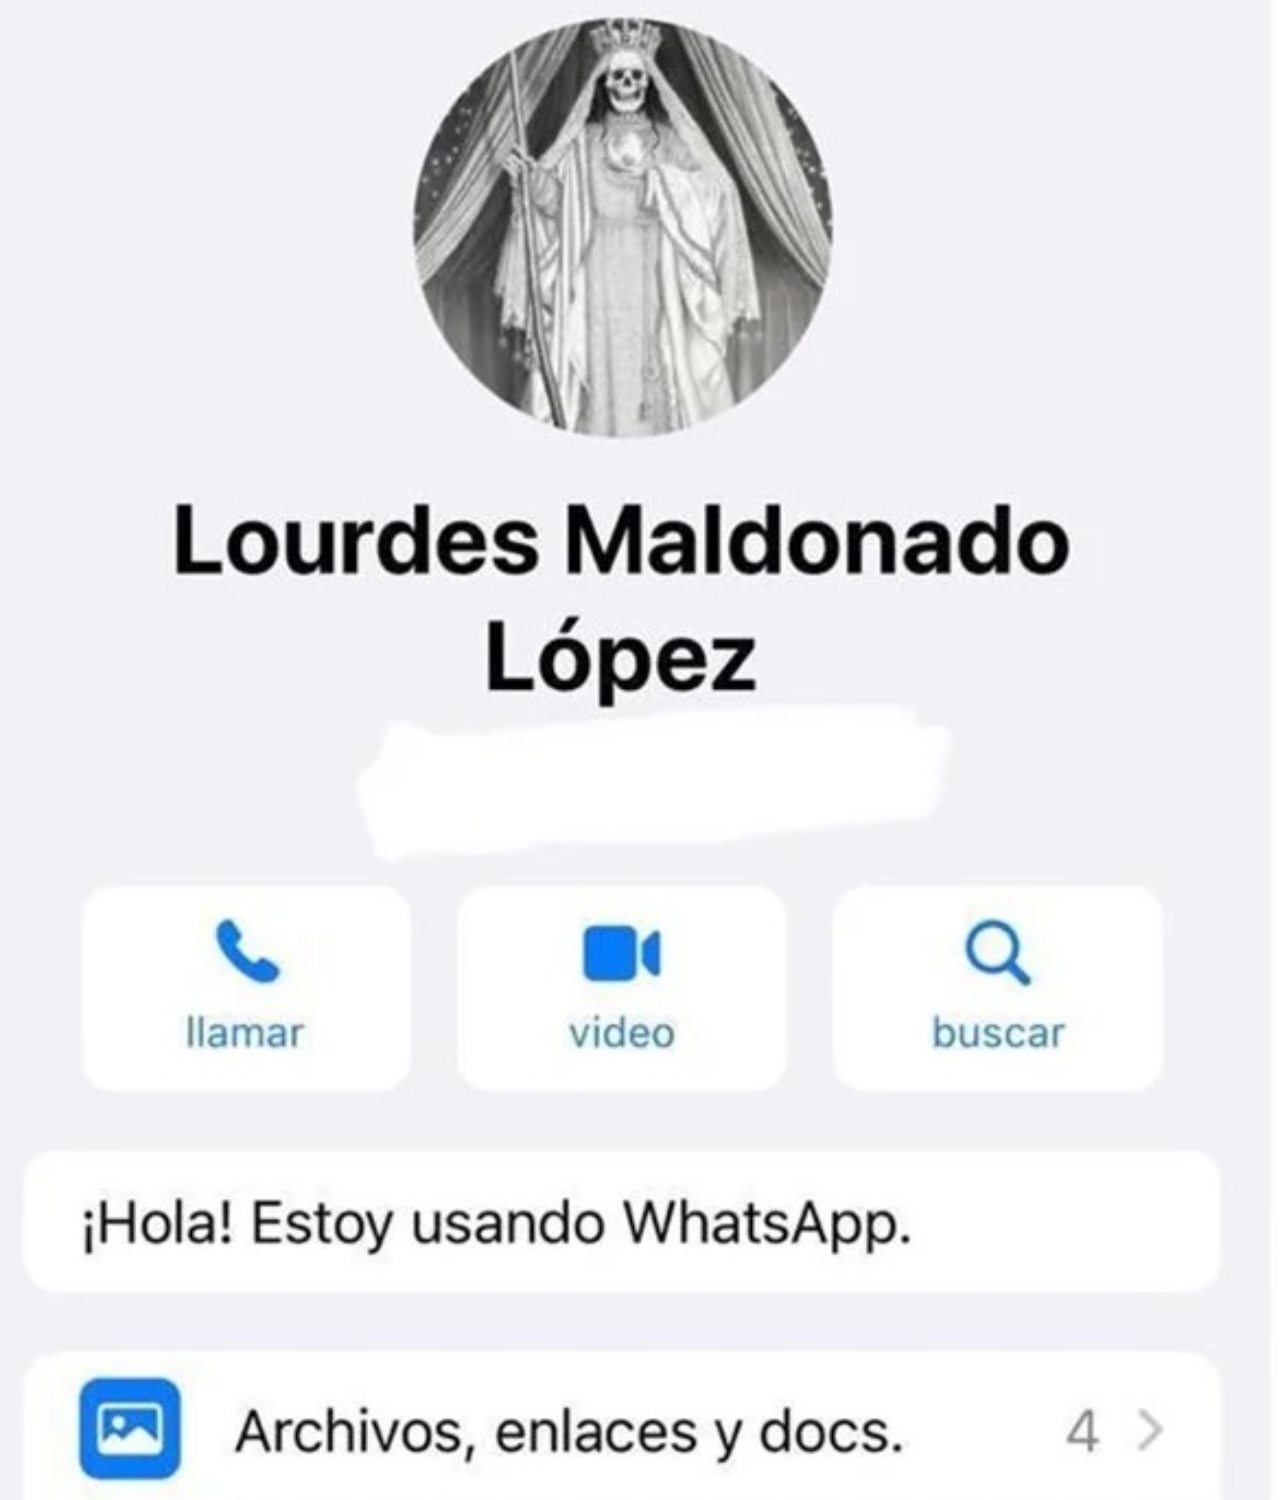 A siete meses del homicidio de Lourdes Maldonado, utilizaron el celular de la periodista y colocaron la imagen de la Santa Muerte en WhatsApp